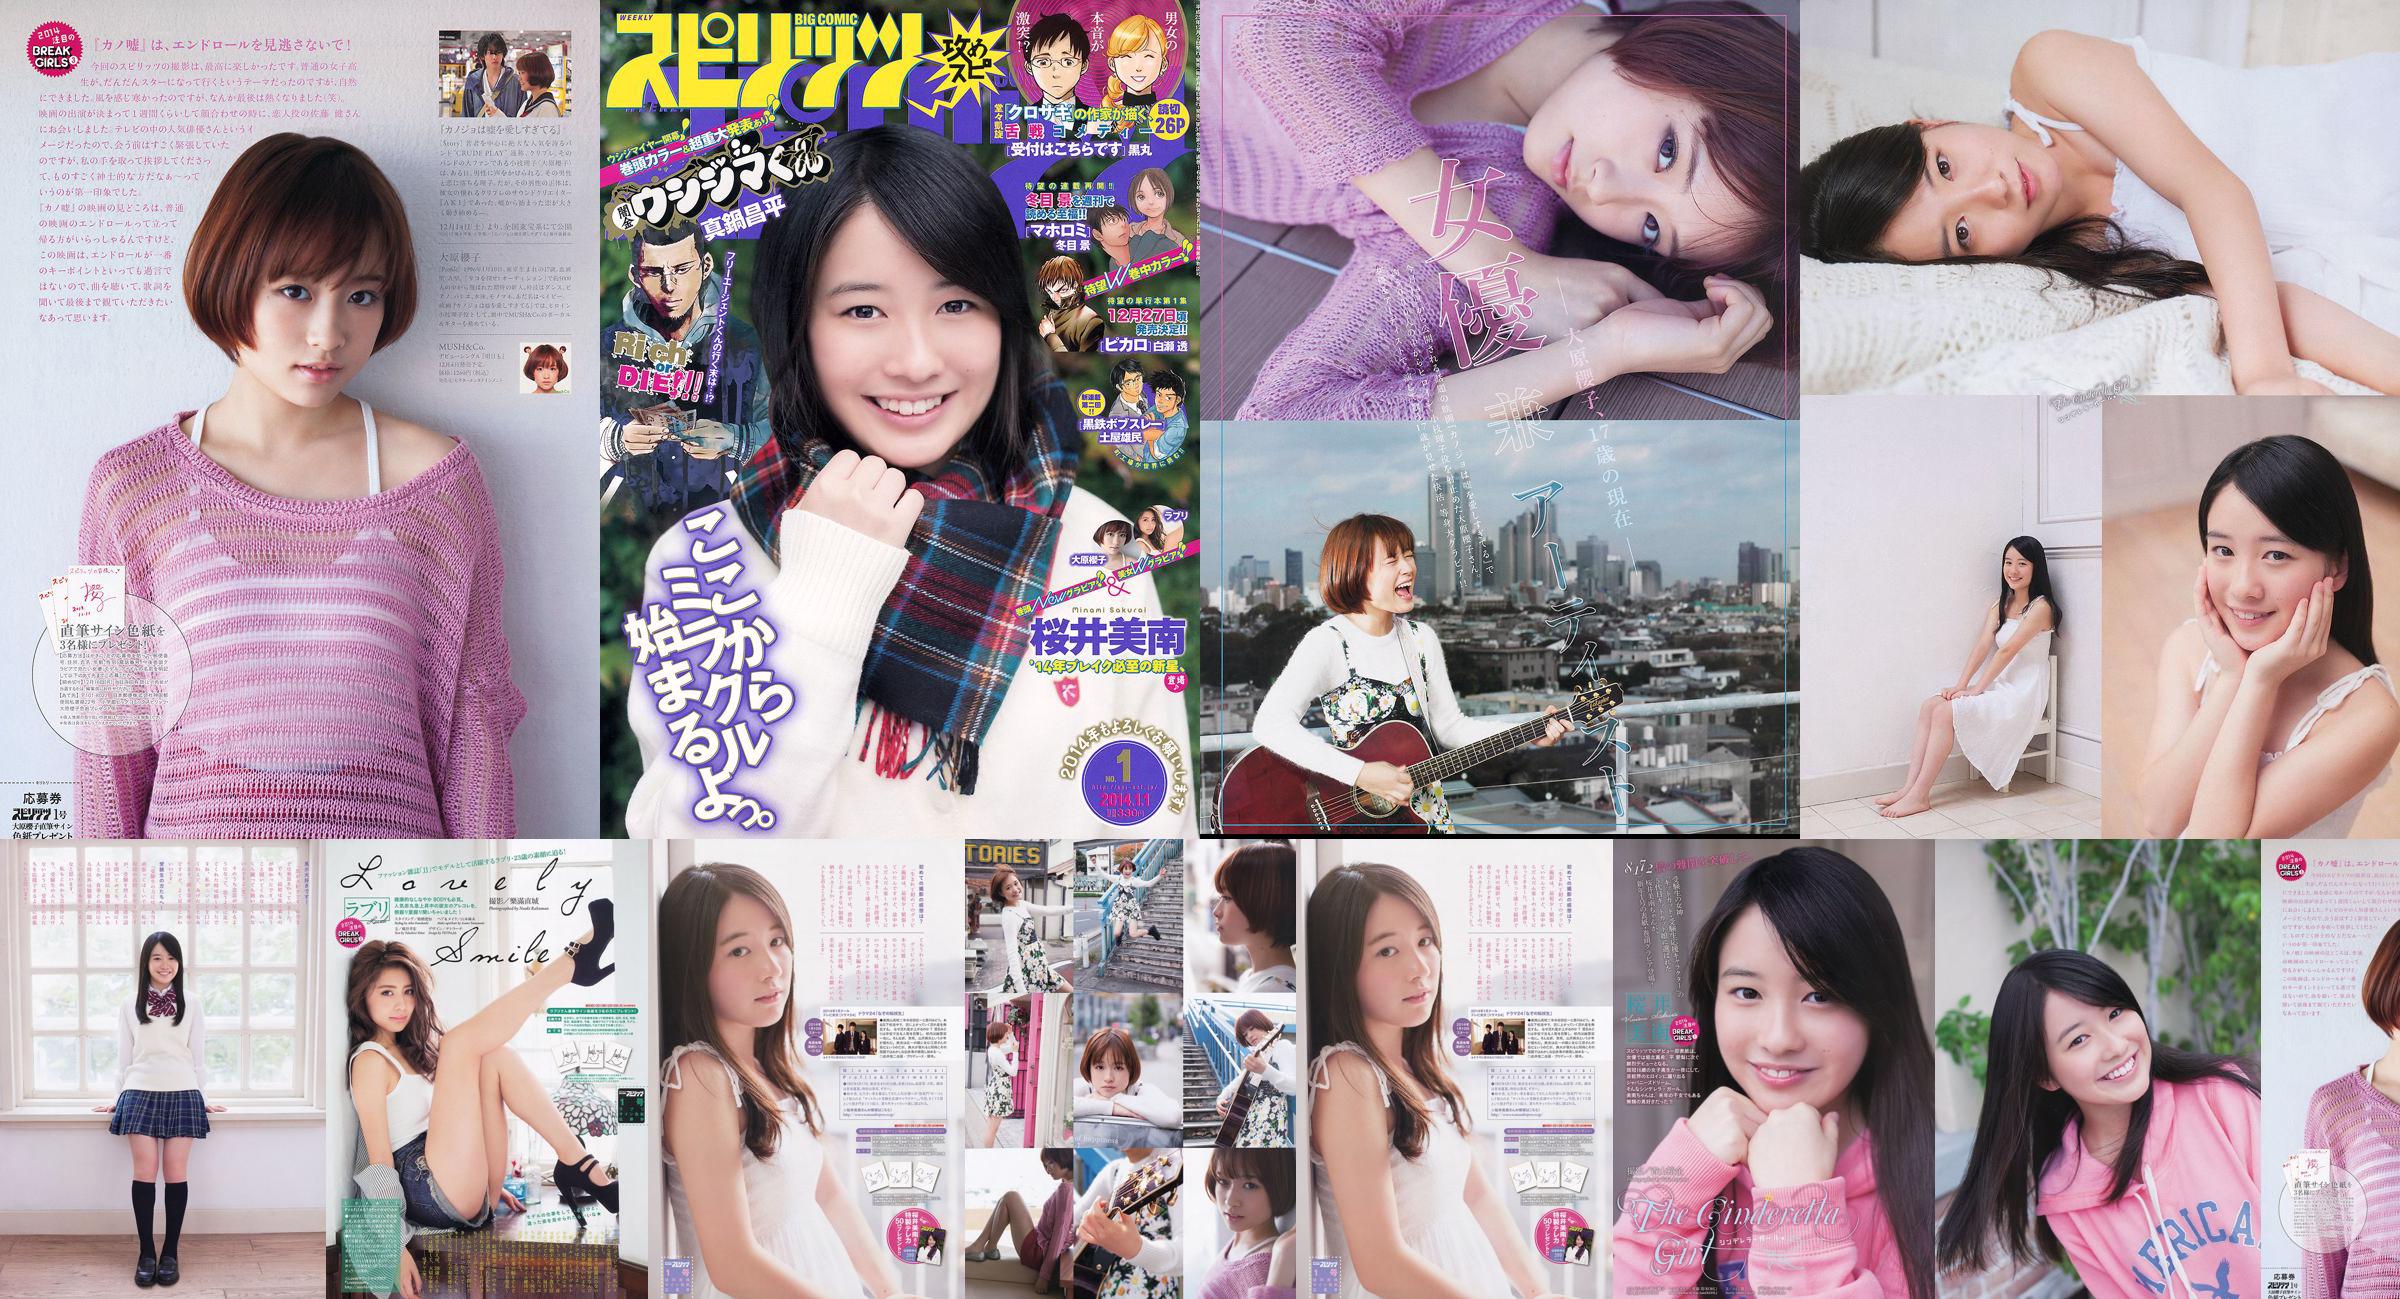 [Wöchentliche große Comic-Geister] Sakurai Minan Ohara Sakurako 2014 No.01 Photo Magazine No.170cc8 Seite 3